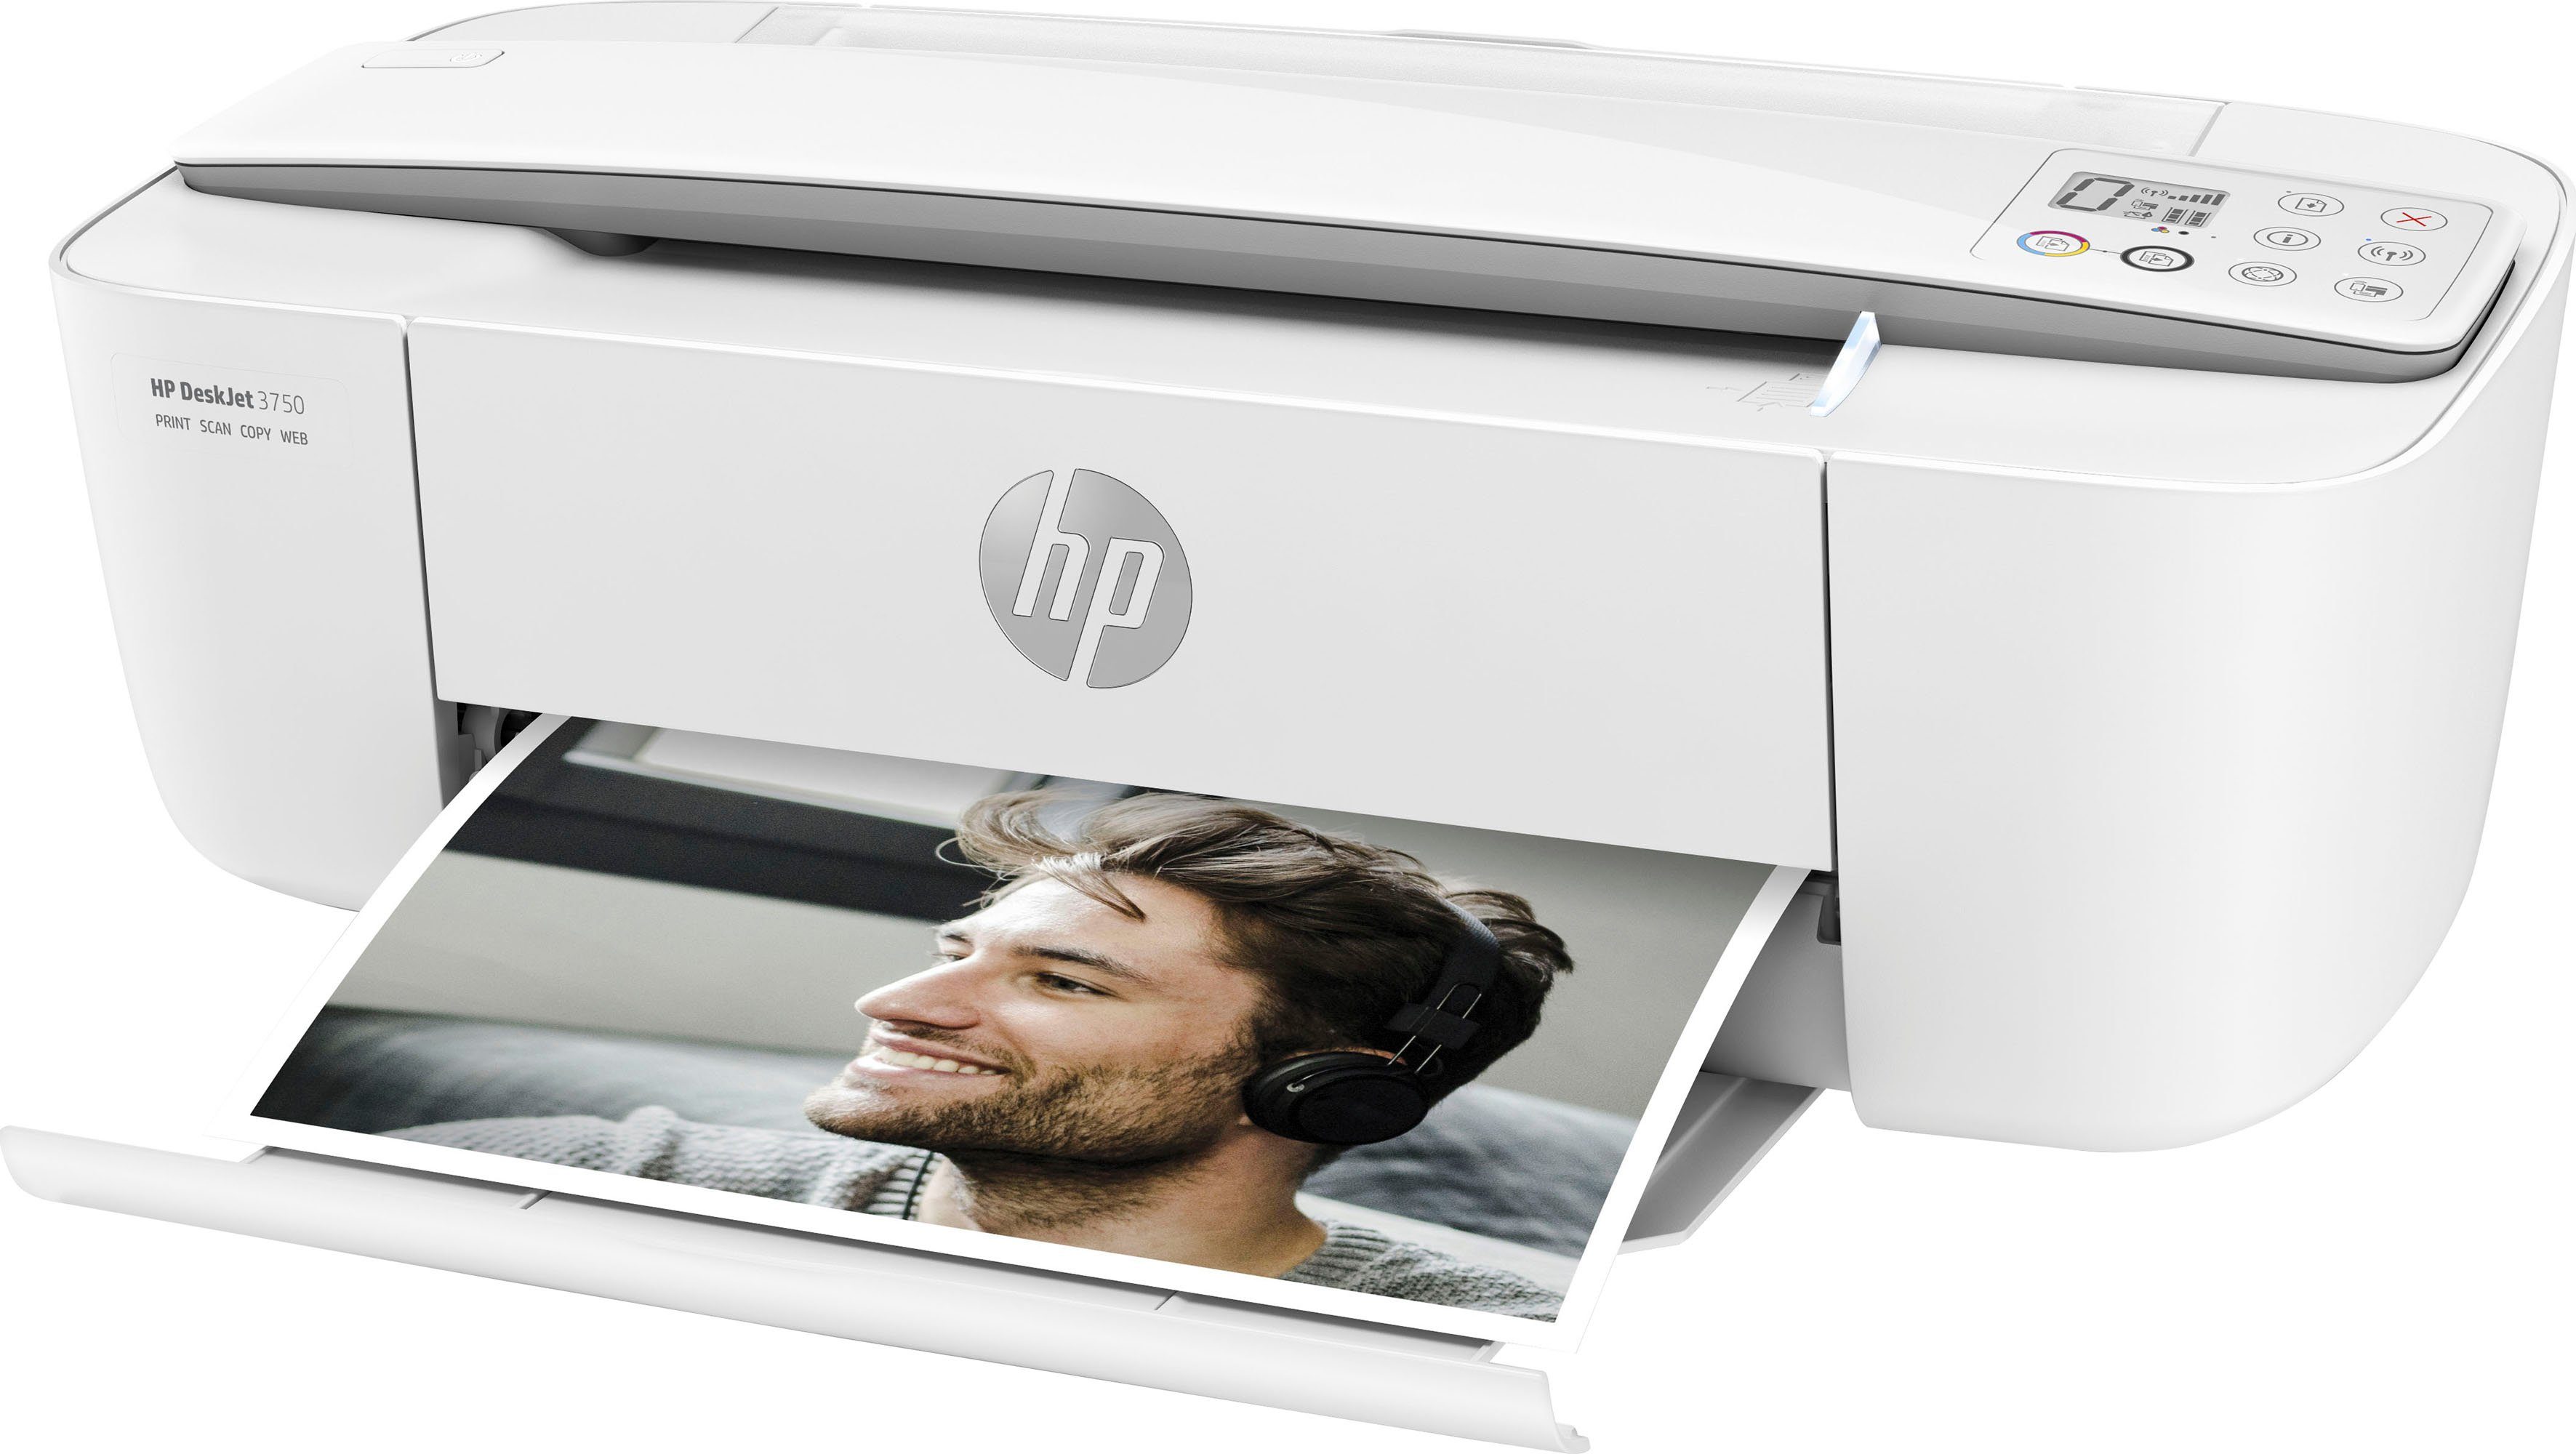 HP+ 3750 Instant (WLAN HP Multifunktionsdrucker, Drucker DeskJet kompatibel) Ink (Wi-Fi),